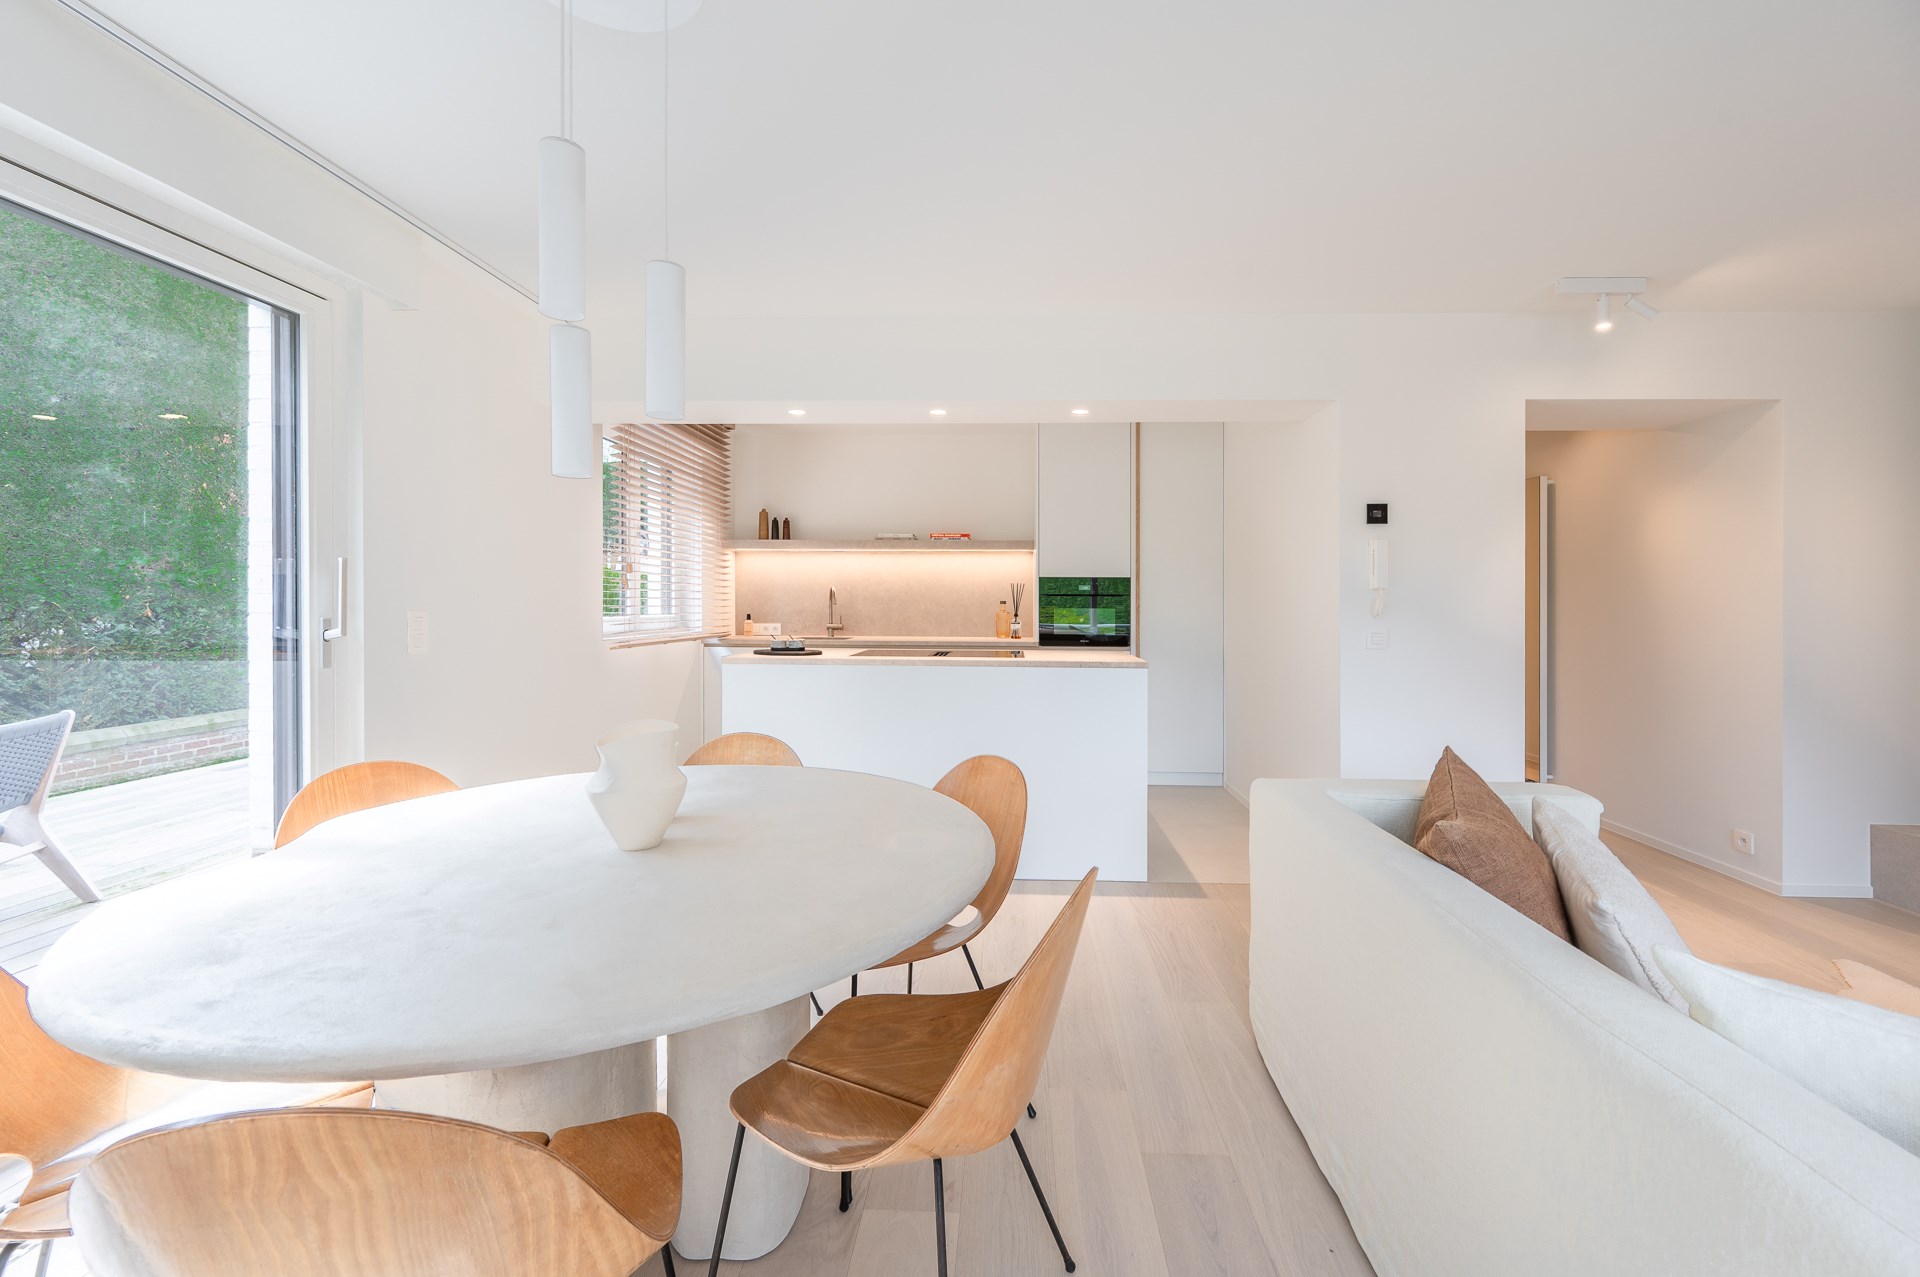 Stijlvol en luxueus gerenoveerd gelijkvloers appartement met twee slaapkamers gelegen op enkele minuten van het strand te Duinbergen. 